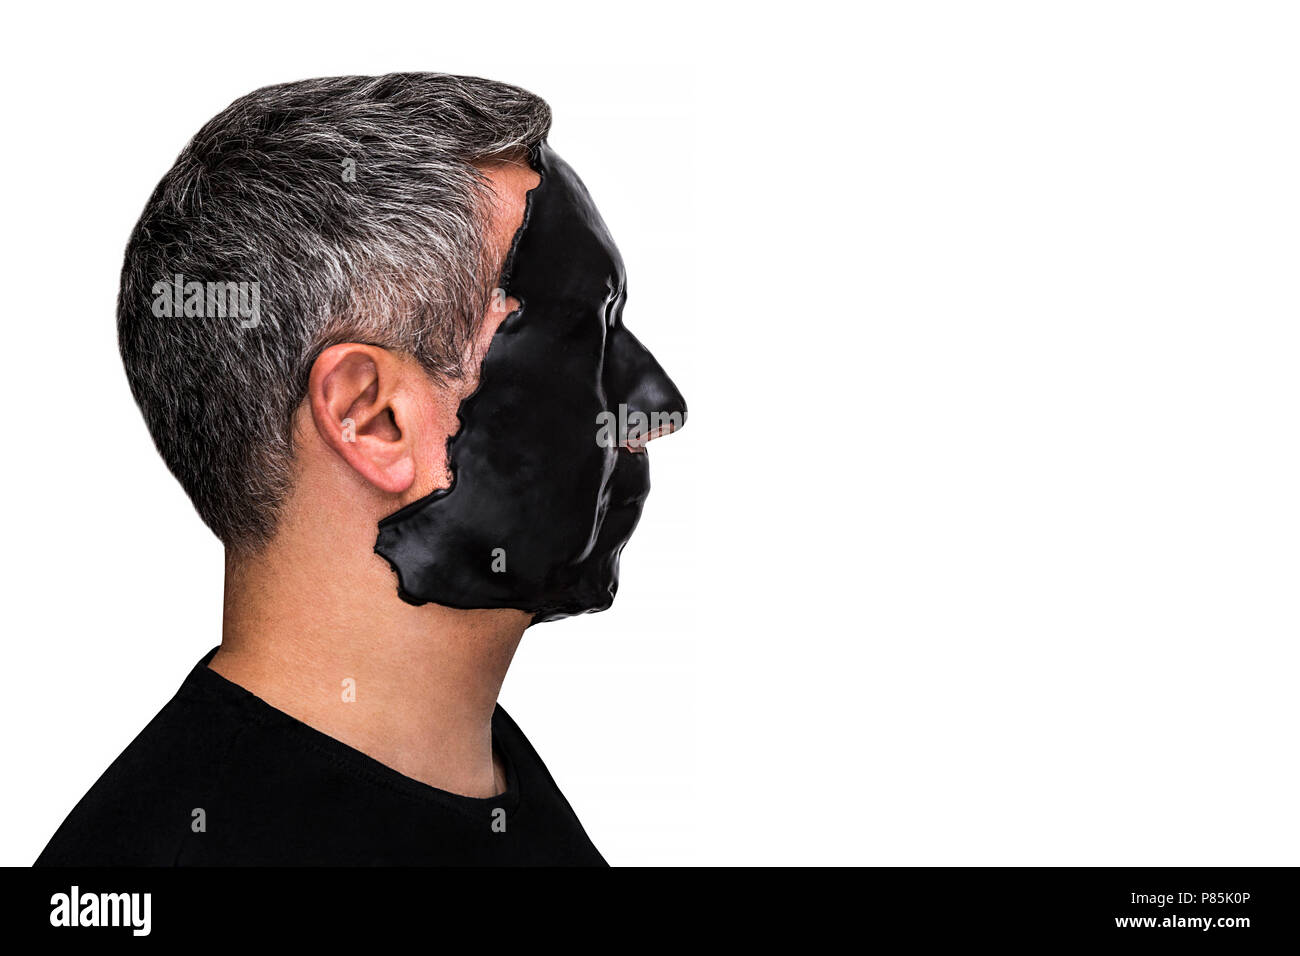 Männlichen Patienten mit Haut Alginat Meeresalgen schwarze Maske auf das Gesicht auf weißem Hintergrund. Stockfoto